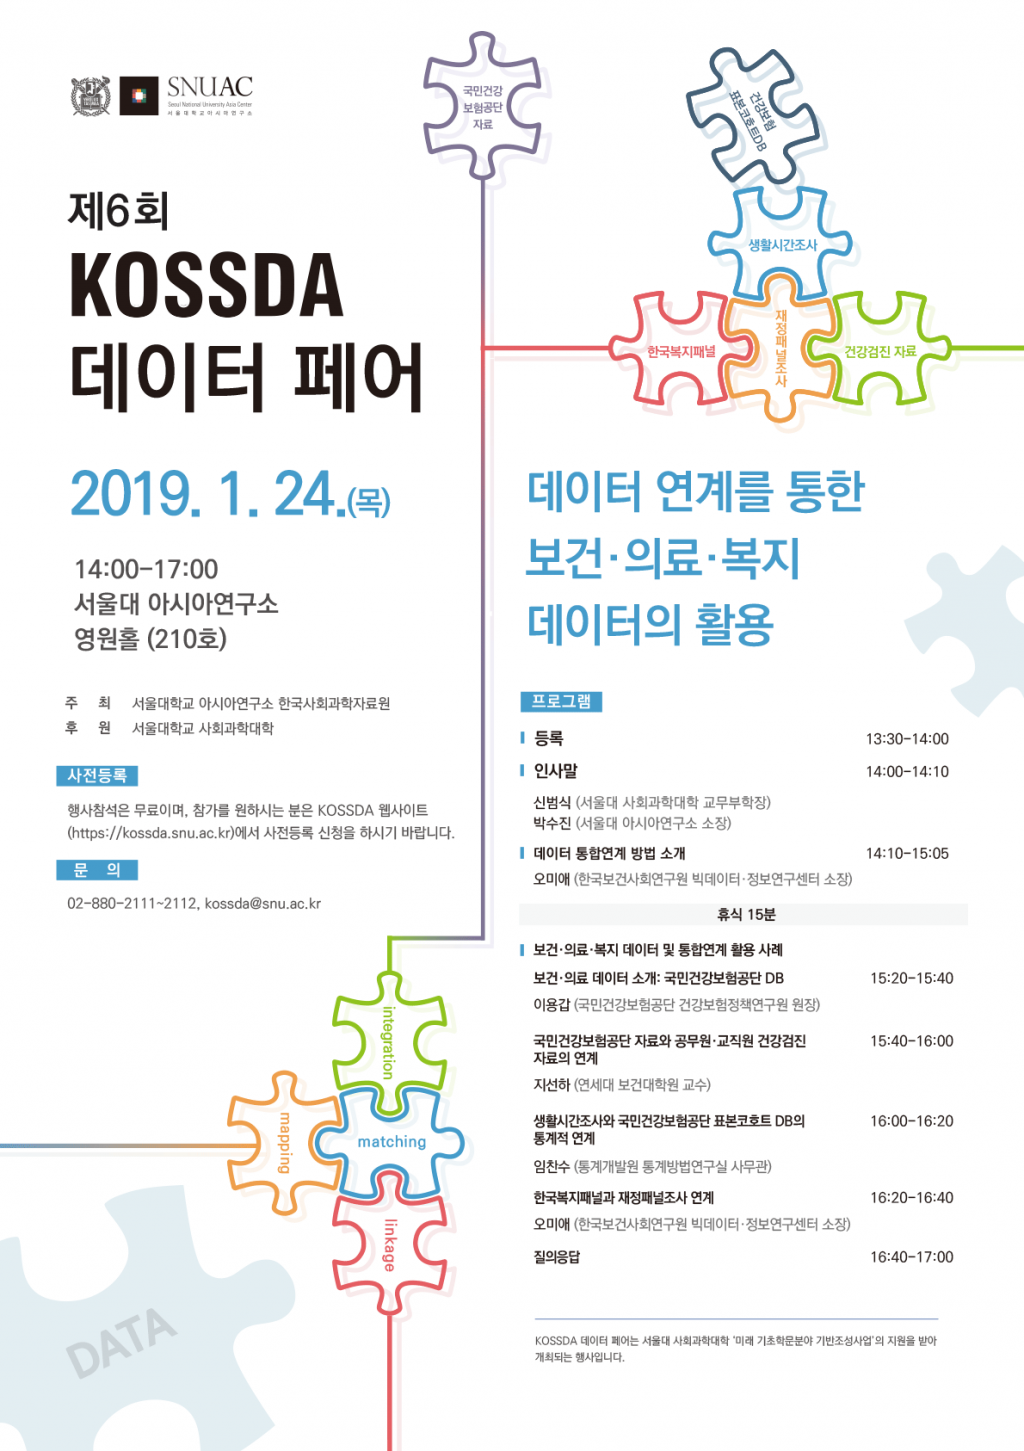 The 6th KOSSDA Data Fair